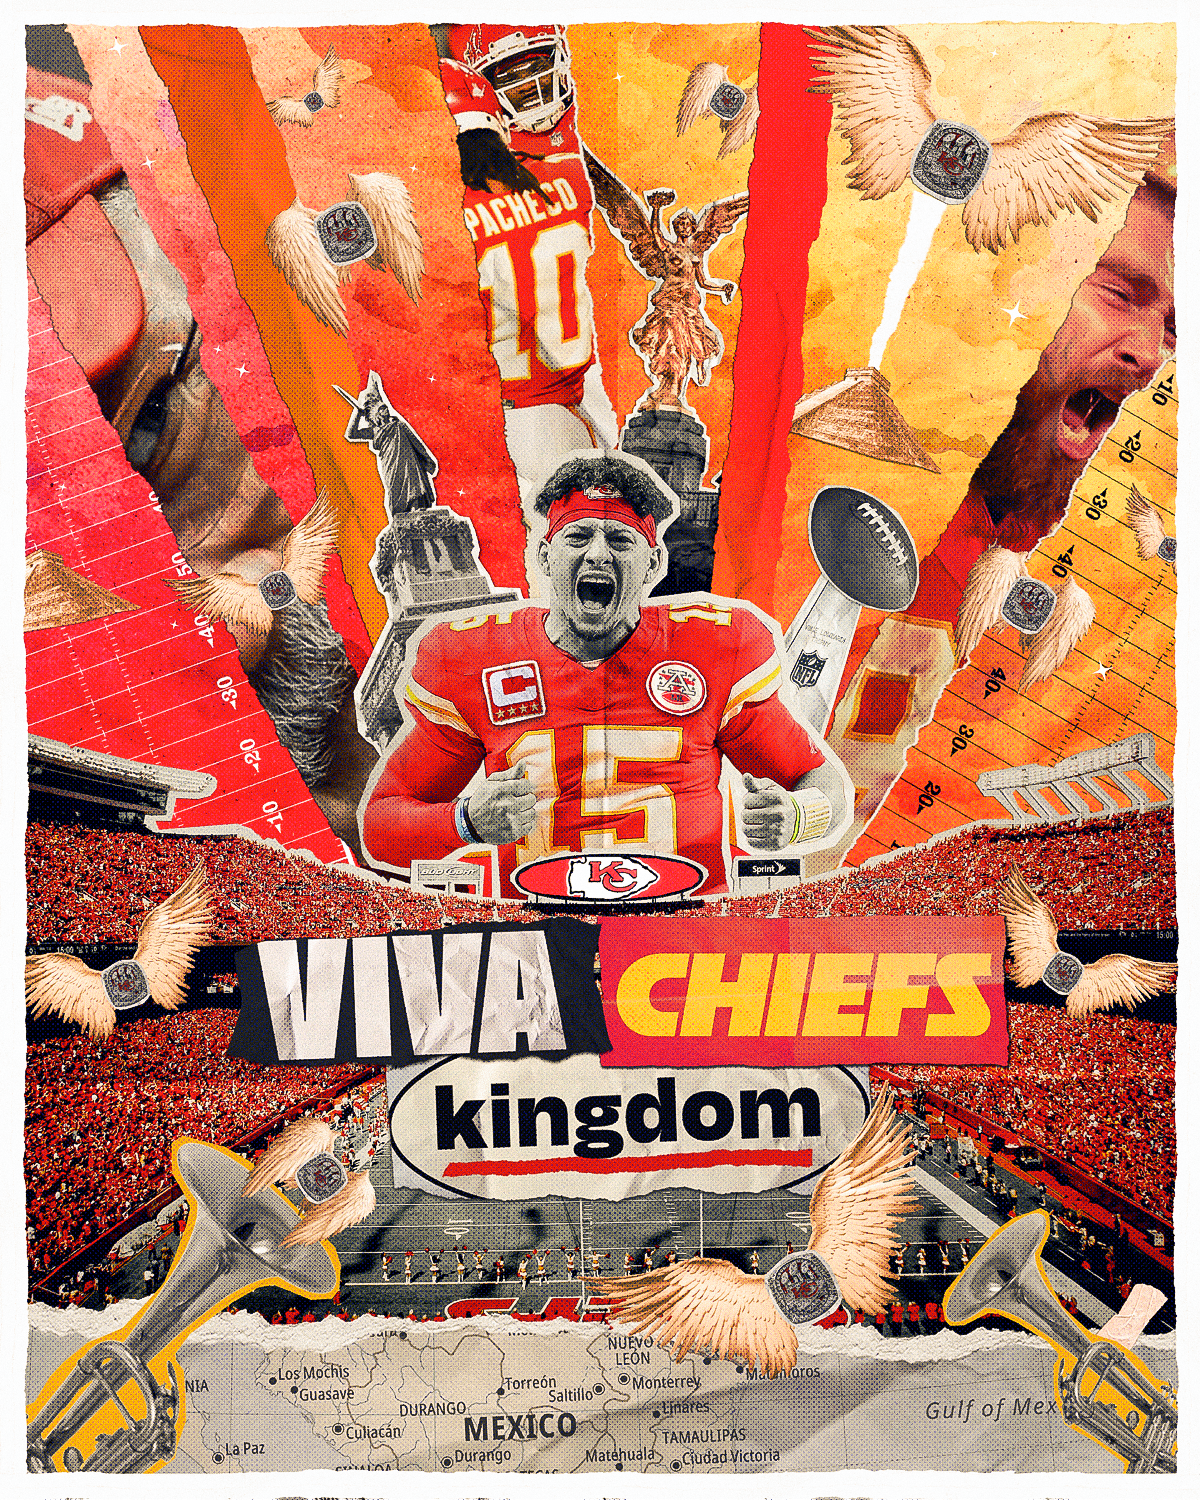 Le rôle clé de Samba Digital dans la création du documentaire « Viva Chiefs Kingdom »